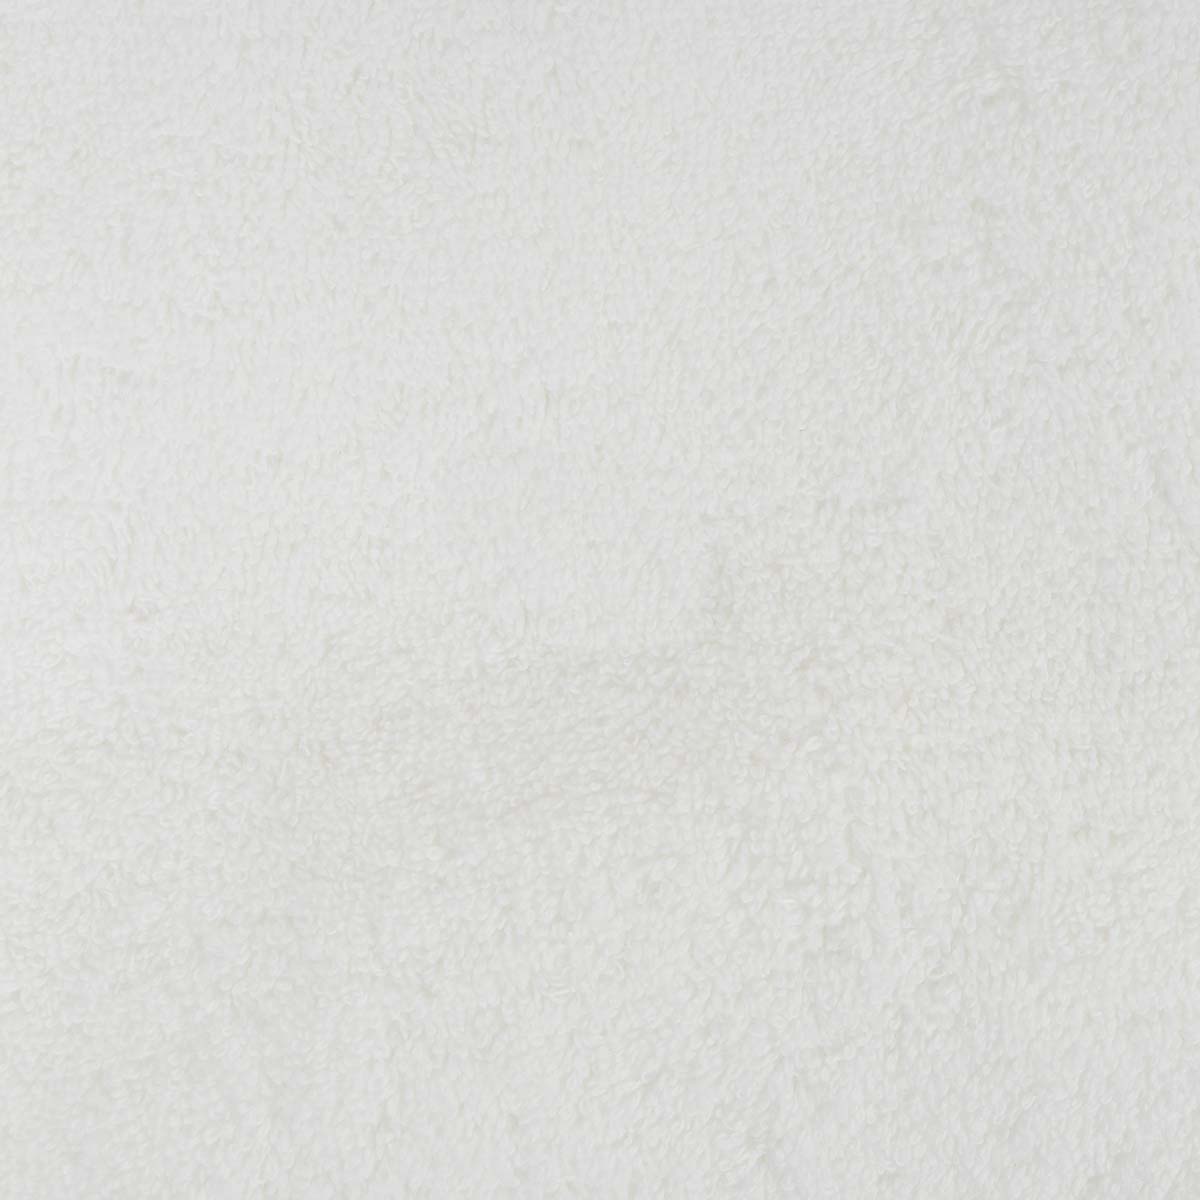 Полотенце махровое Lameirinho Aqua 70x140см, цвет белый Lameirinho 925085/blanco/070140 925085/blanco/070140 - фото 6